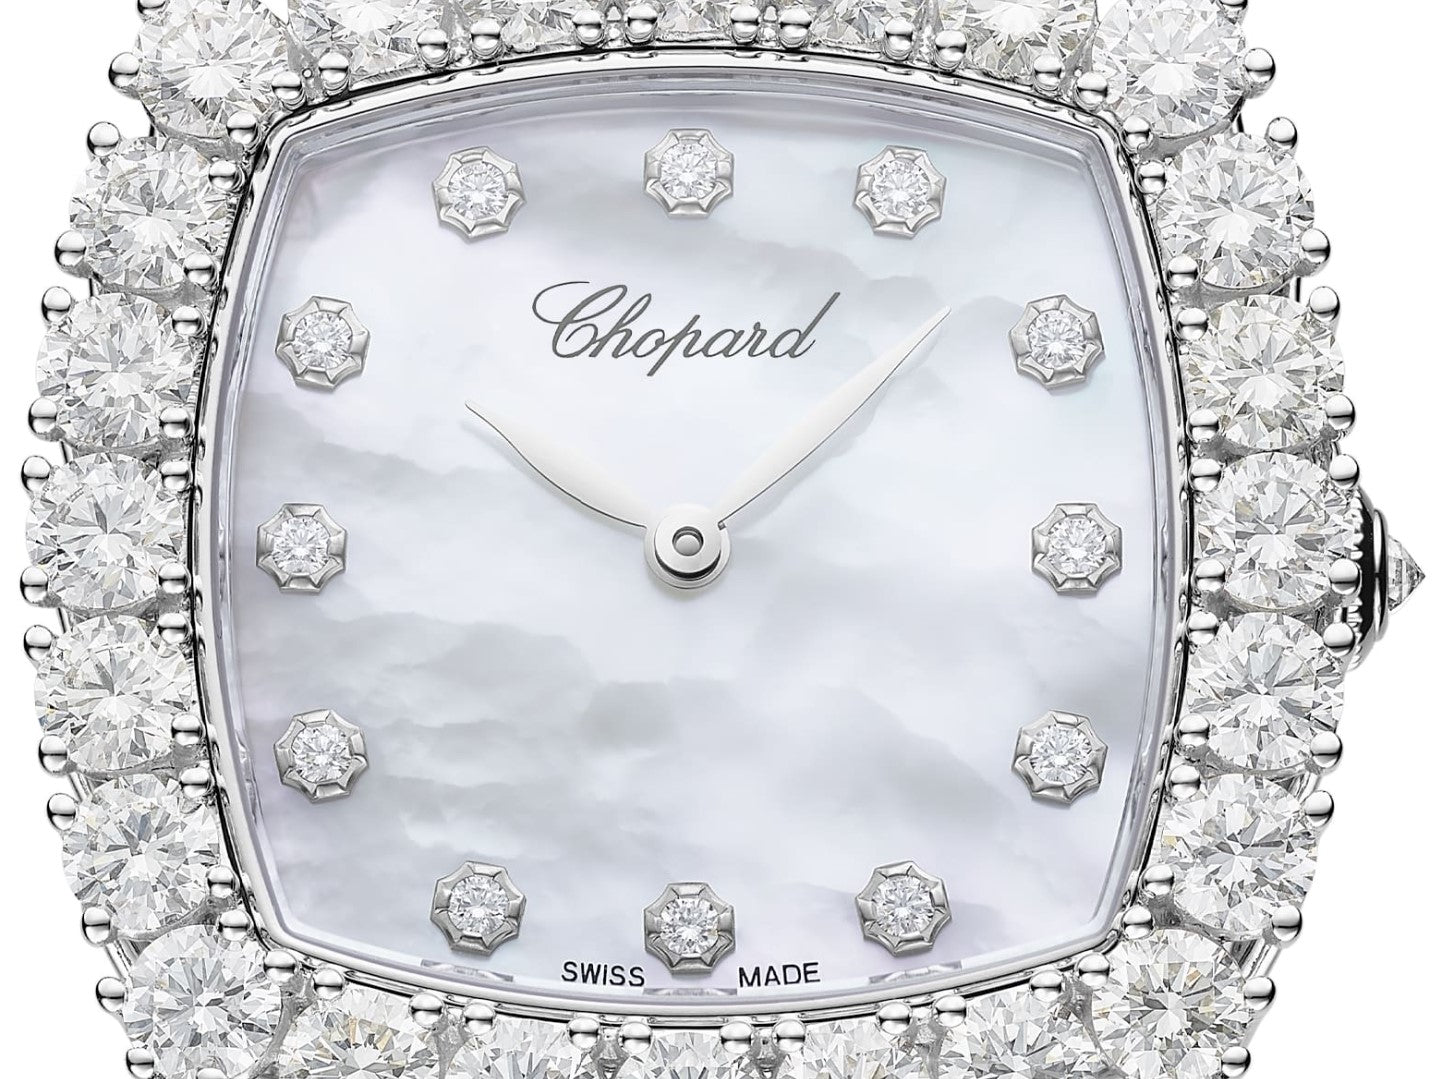 Chopard L’Heure Du Diamant 18K White Gold & Diamonds Ladies Watch